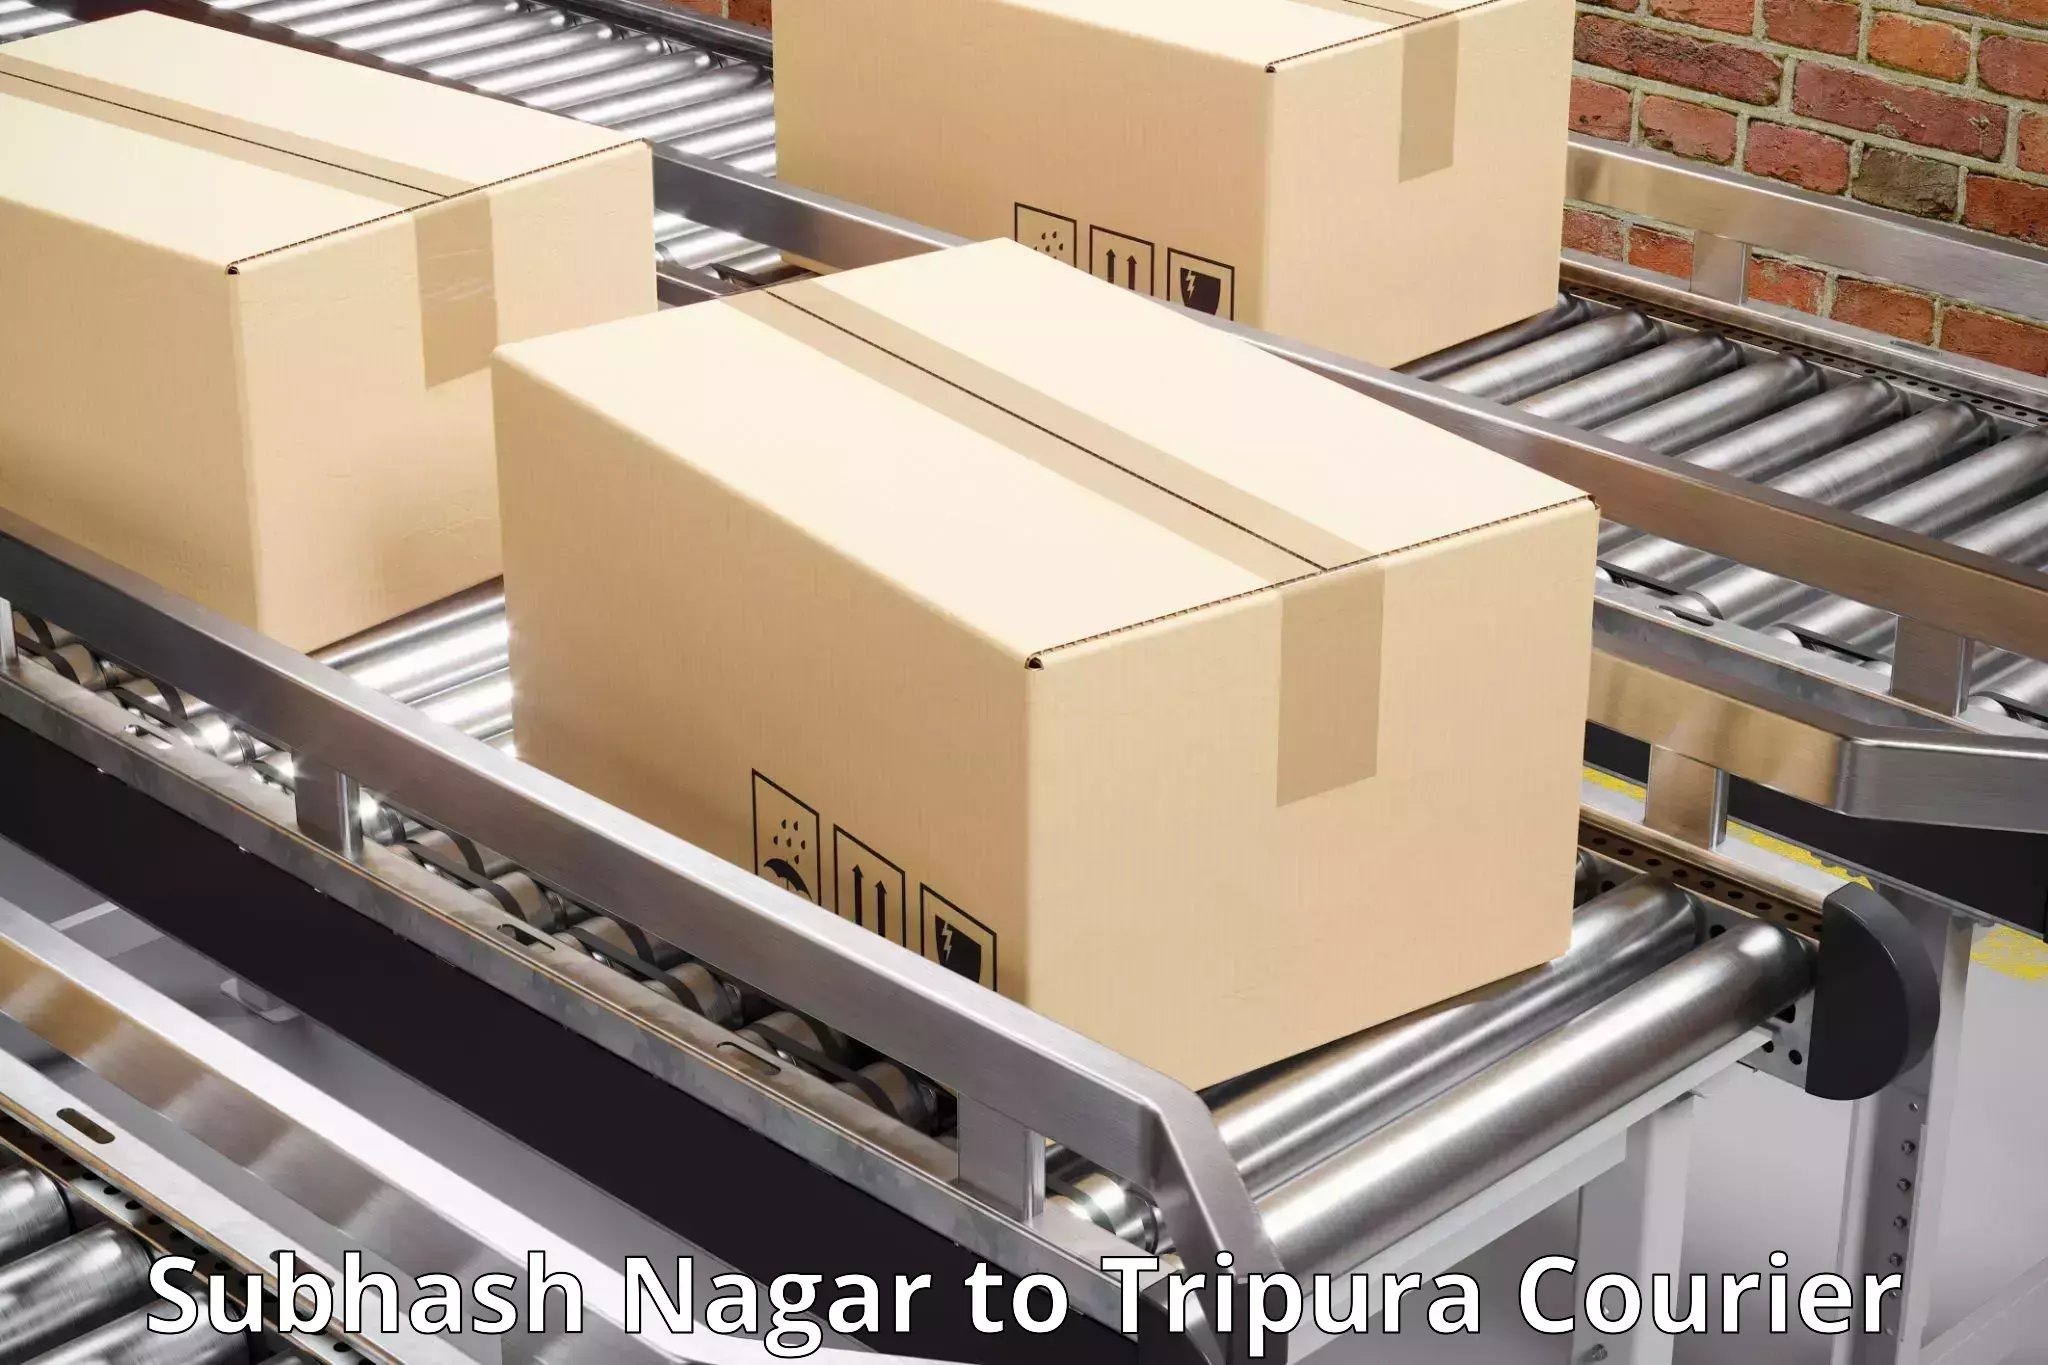 High-speed parcel service Subhash Nagar to Kamalpur